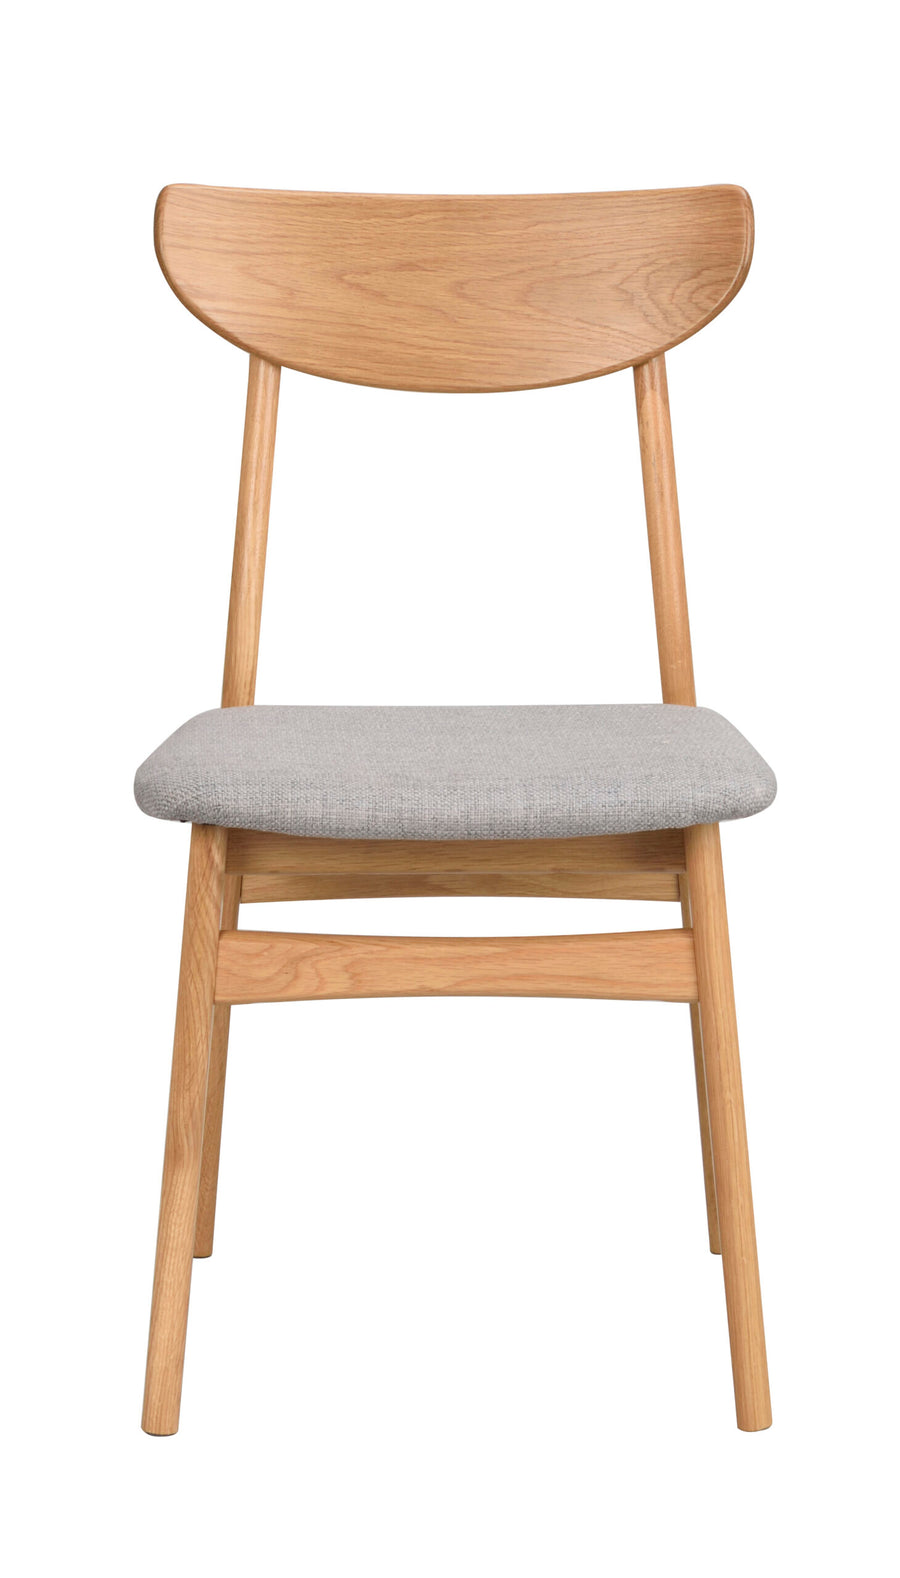 120065_a, Rodham chair, oak_grey